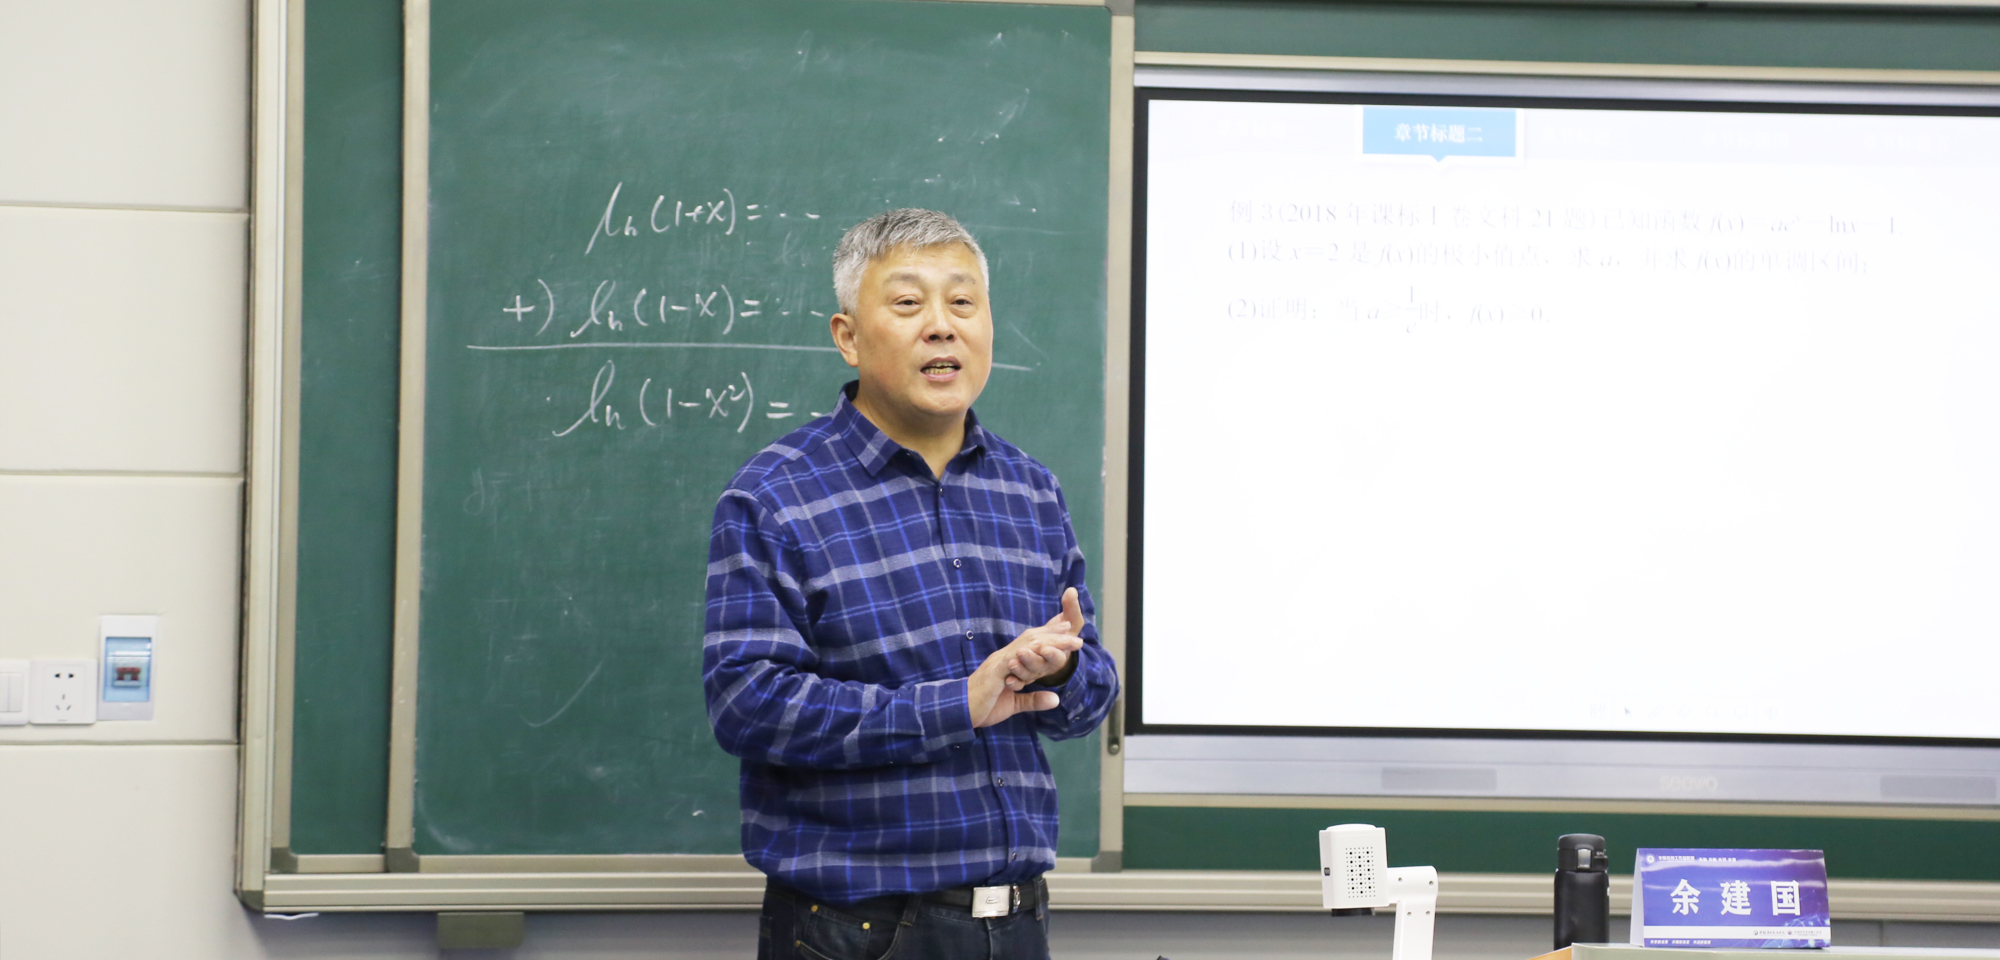 研究院专家、学术指导南京正高级、特级教师余建国的精彩高中数学示范课堂和教研活动受到好评。